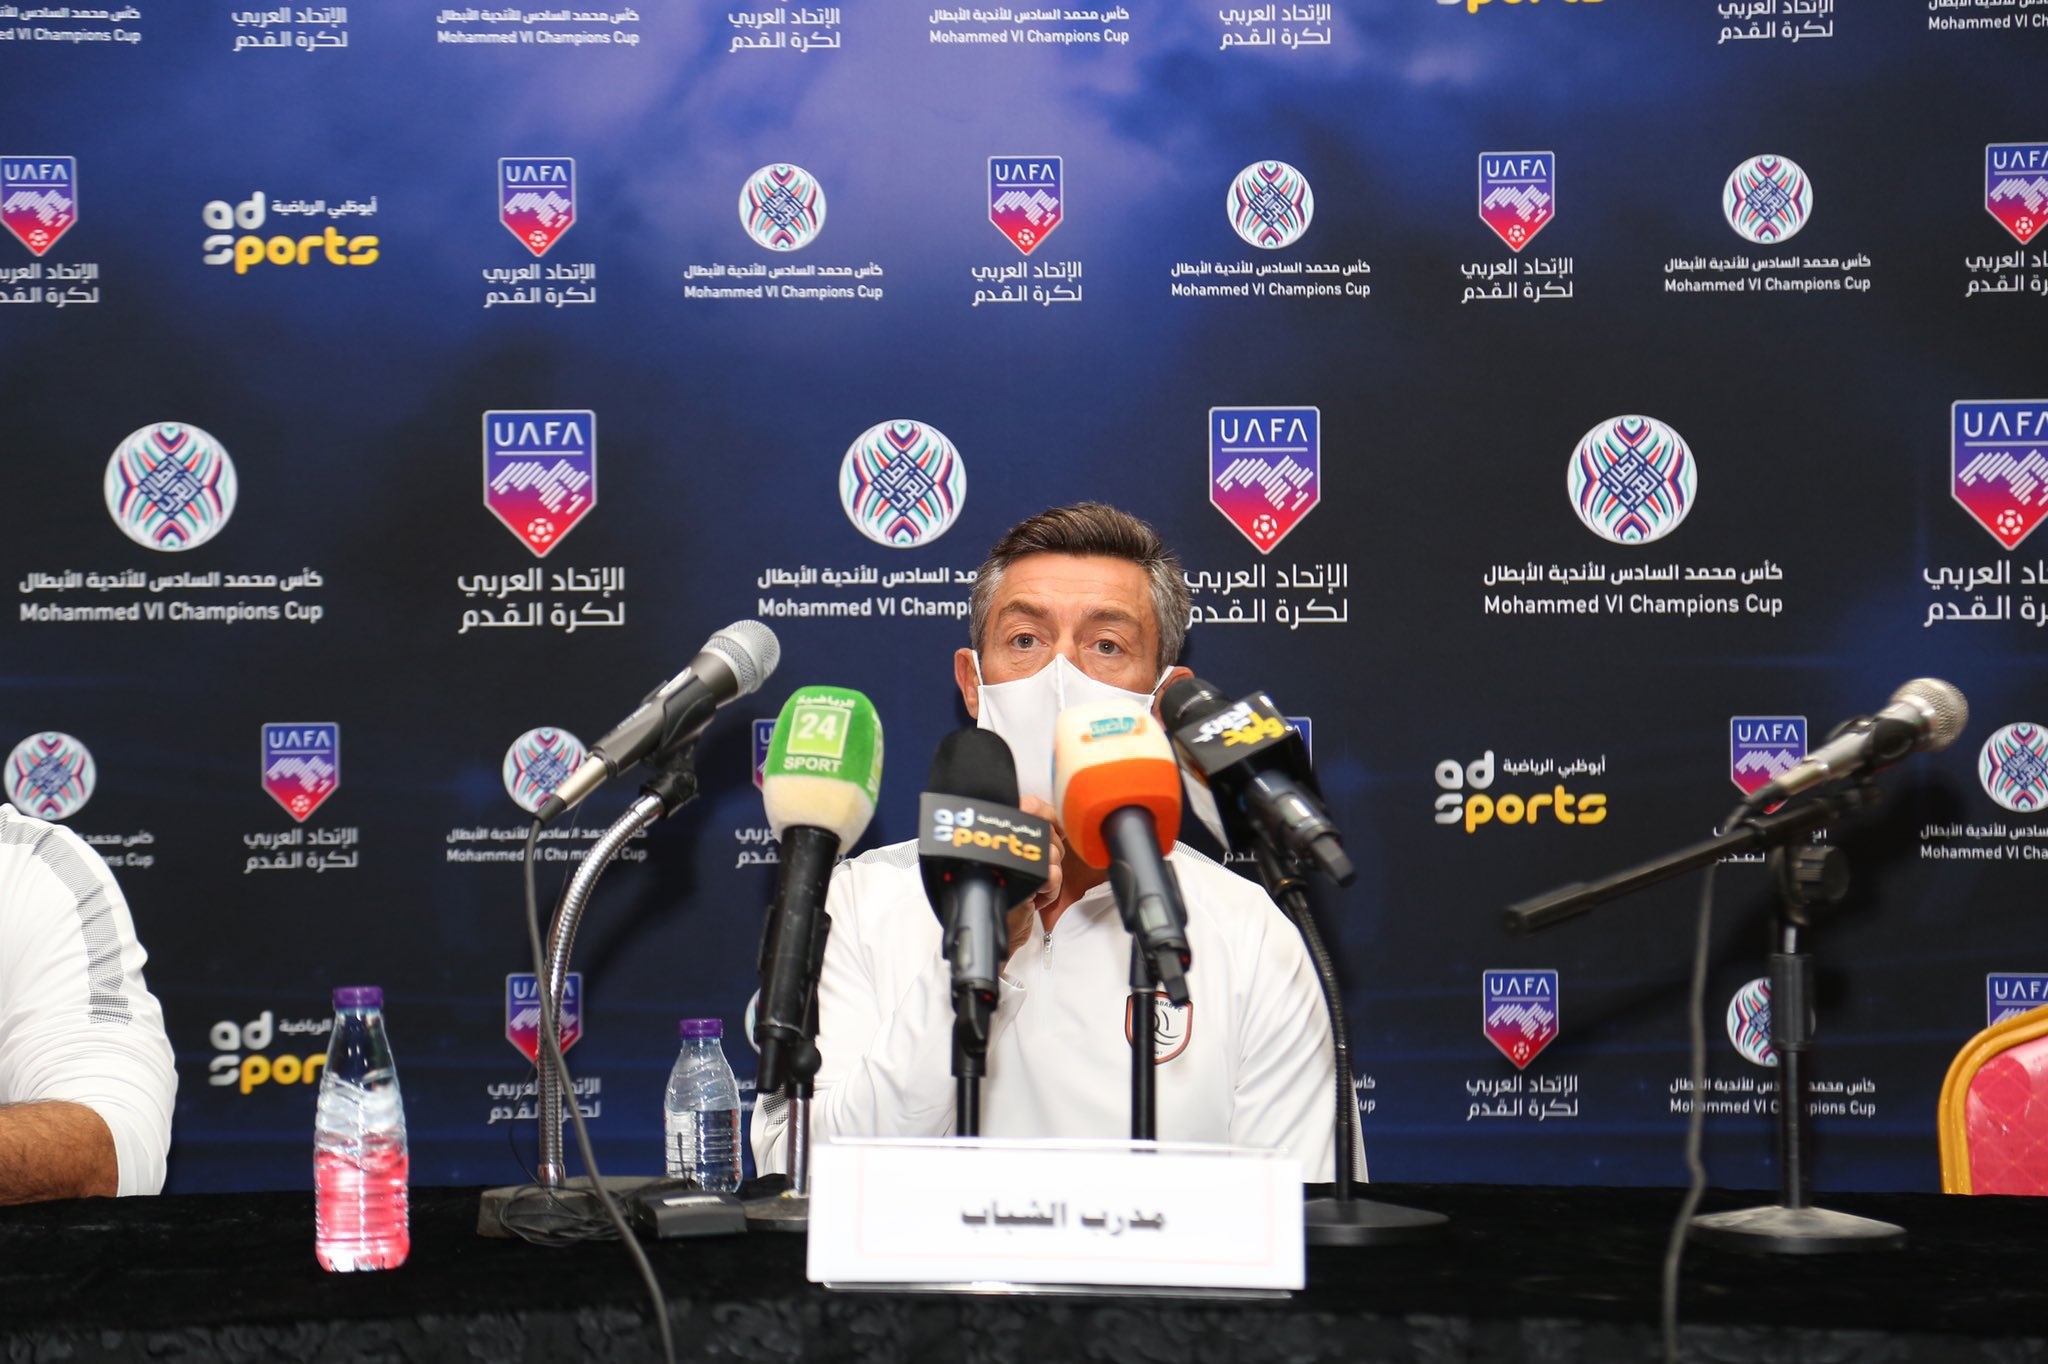 كايشينيا يستهدف حصد البطولة العربية بعد غياب 20 عامًا